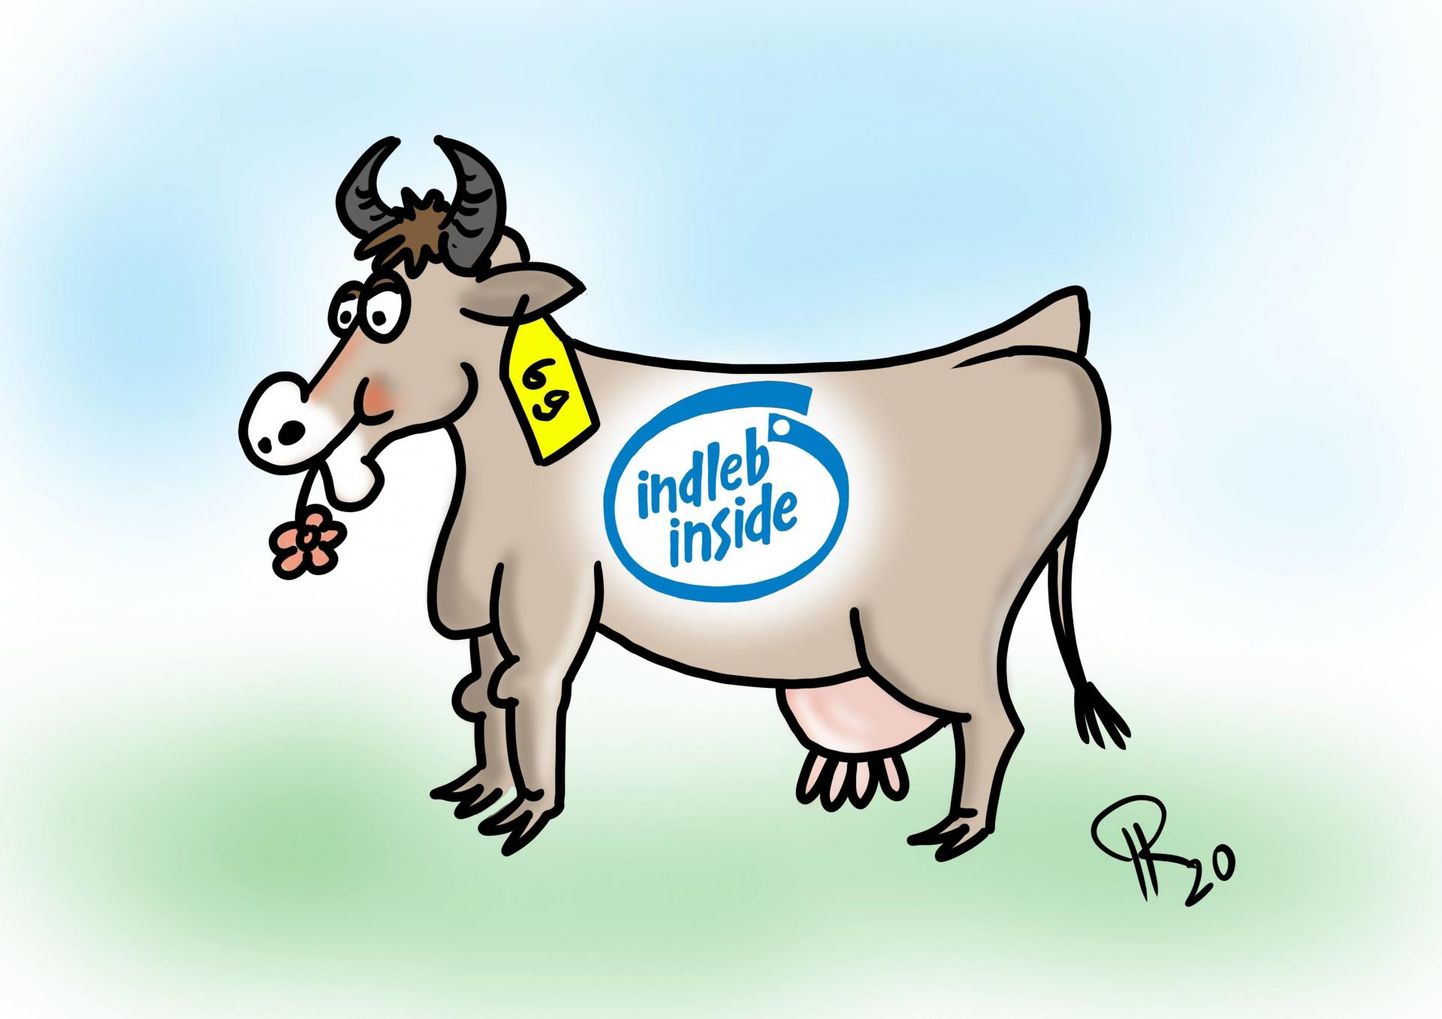 Uus aeg, uued kombed. Nii juhtub, kui piimakarjapidajaks saab endine IT-spetsialist.